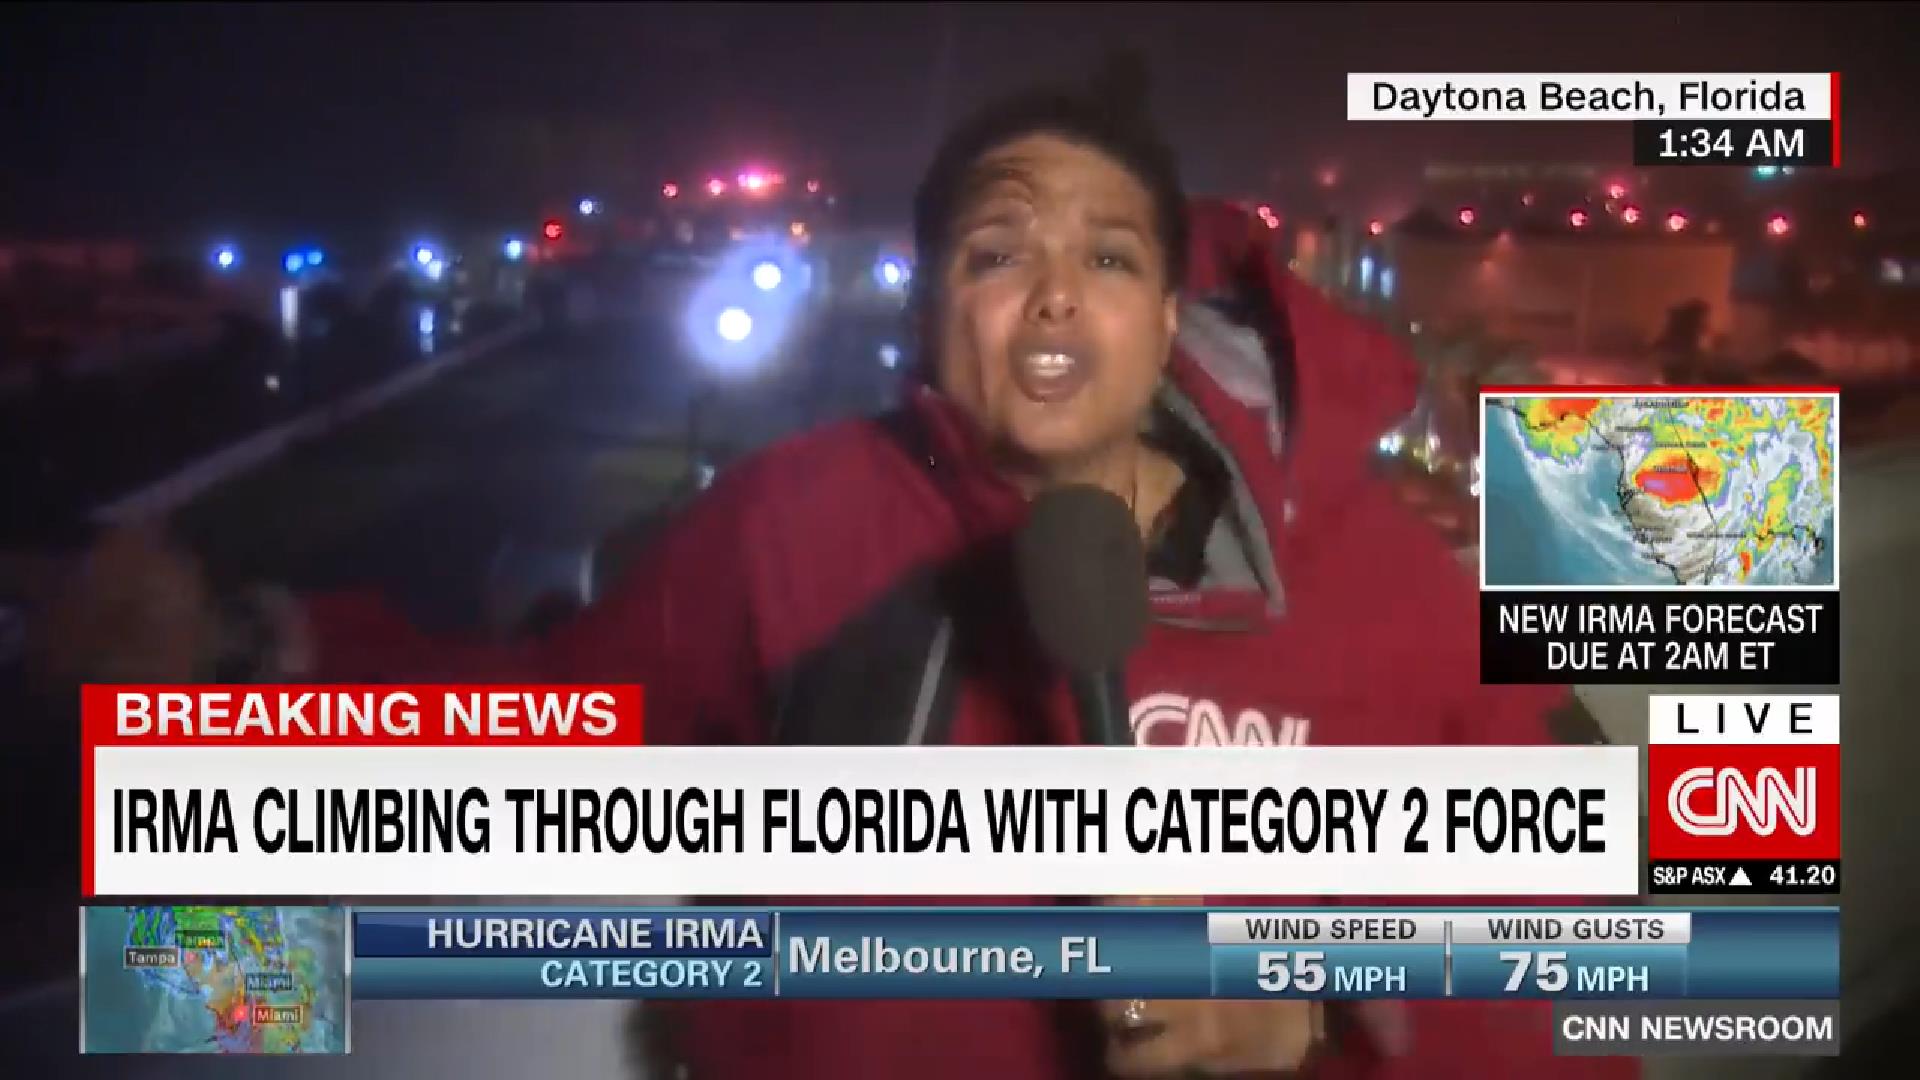 สปิริตแรงกล้า!! นักข่าวสาว CNN ยืนหยัดรายงานข่าว ท่ามกลางลมพายุจนตัวเกือบจะปลิว…